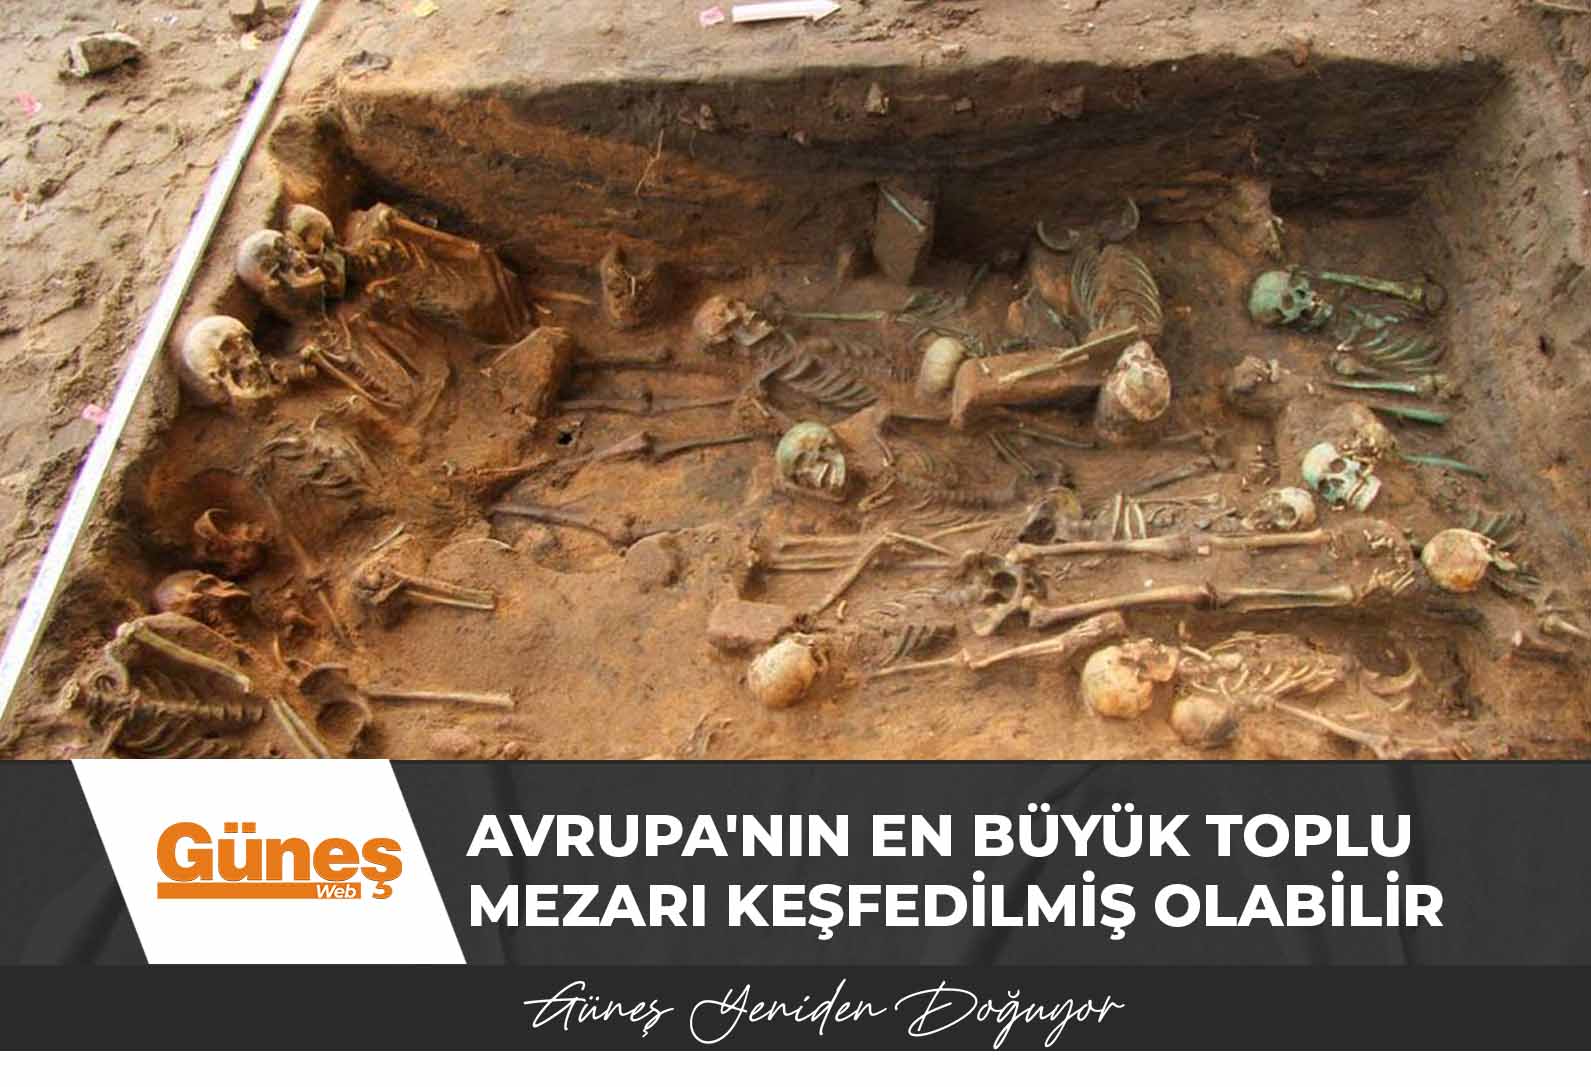 Avrupa’nın en büyük toplu mezarı keşfedilmiş olabilir